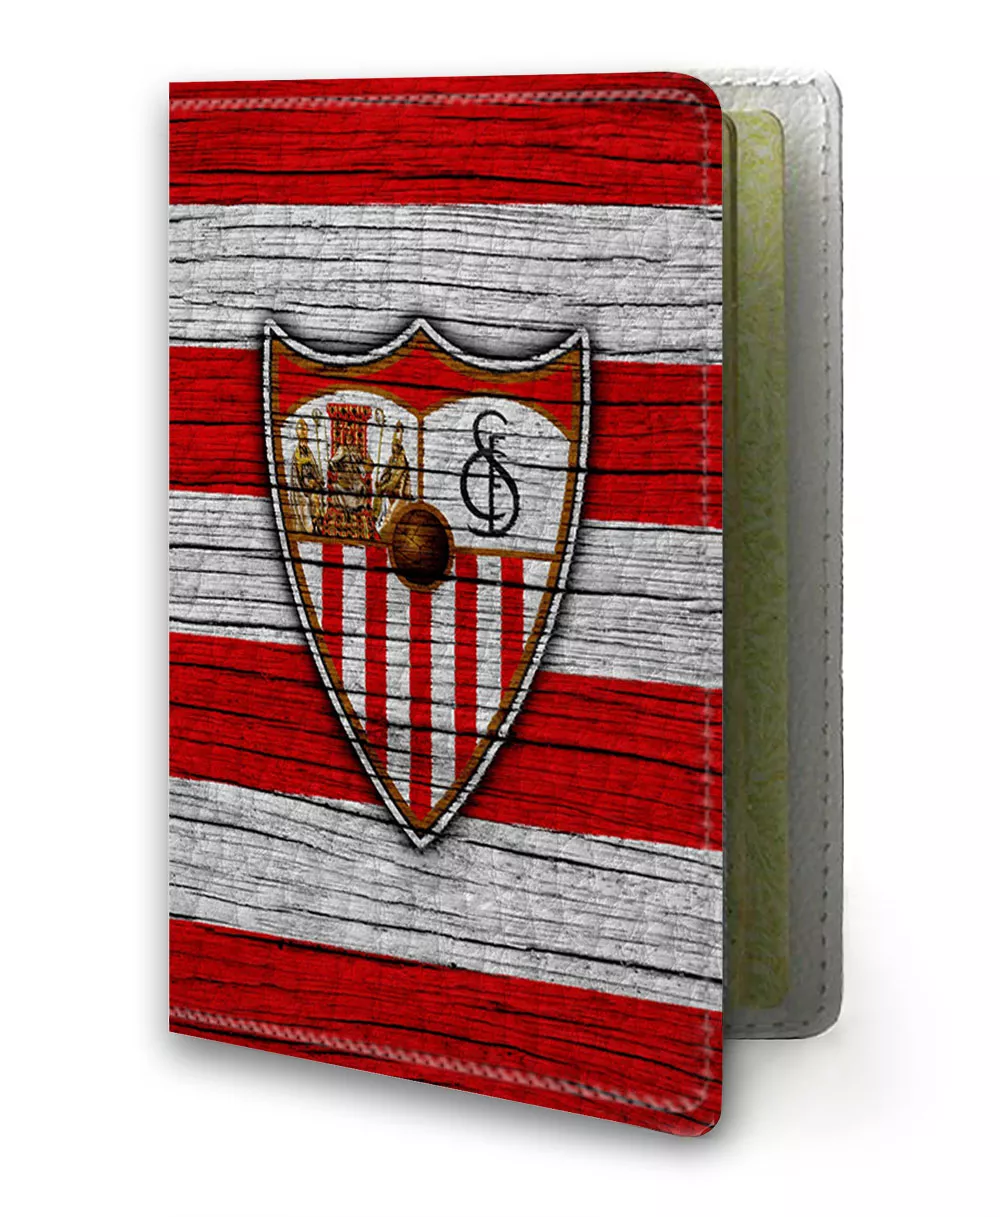 Обложка для паспорта - ФК Севилья